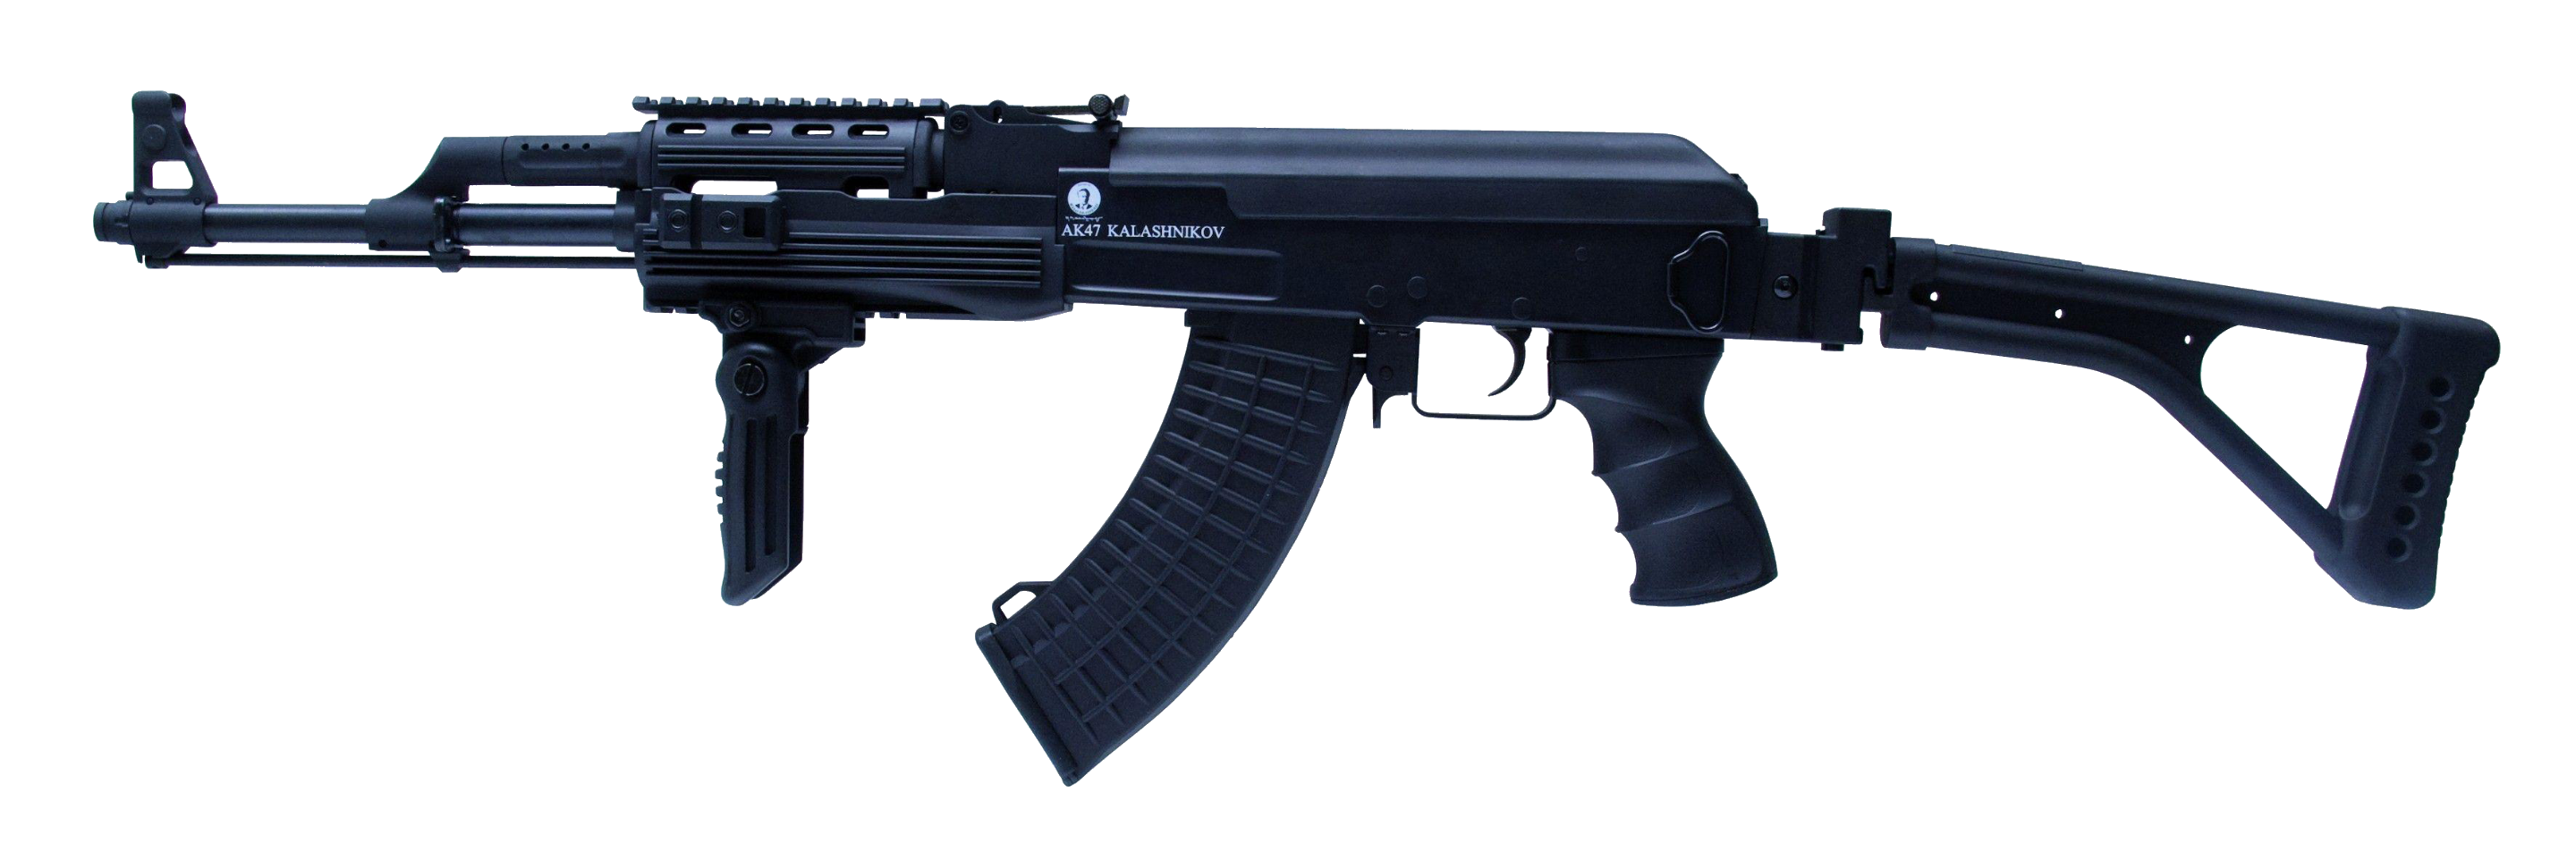 gun-67